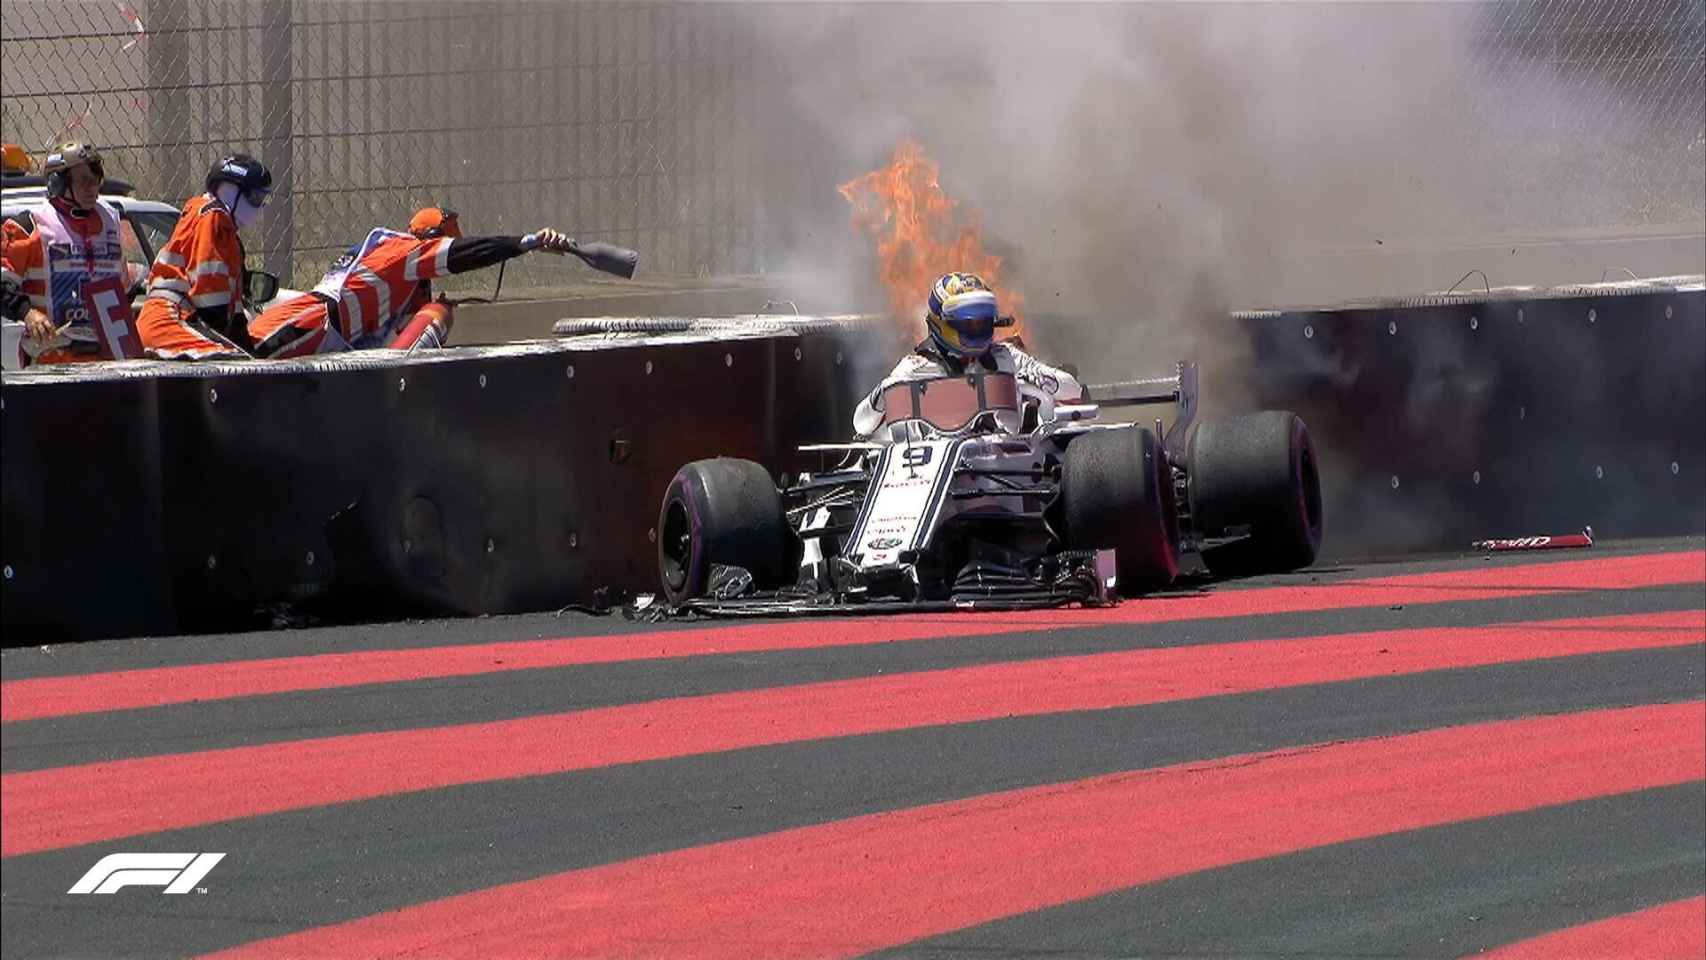 MArcus Ericcson sale de su coche en llamas durante los libres.